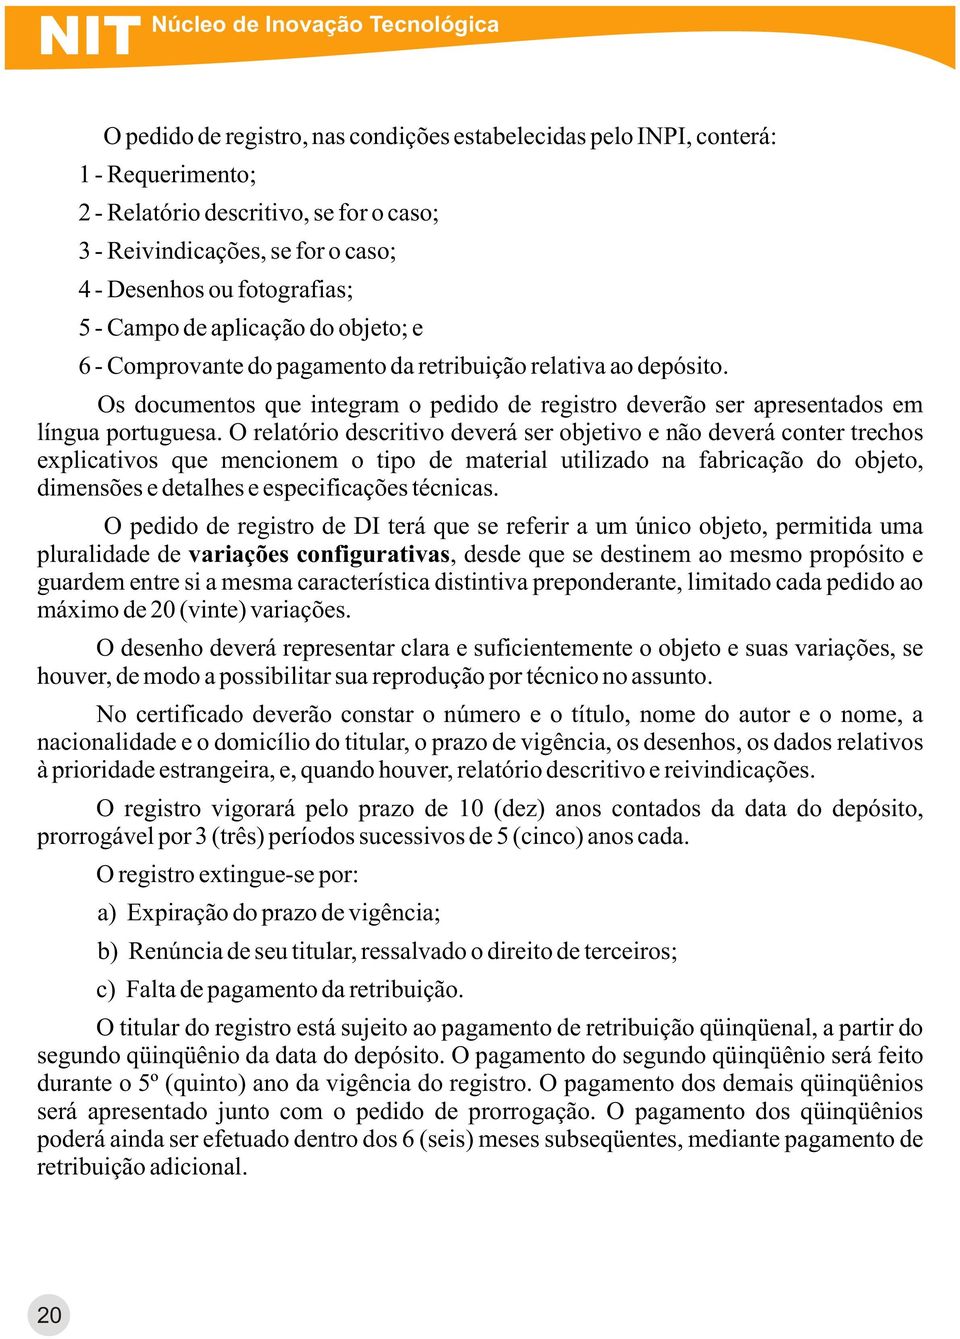 Os documentos que integram o pedido de registro deverão ser apresentados em língua portuguesa.